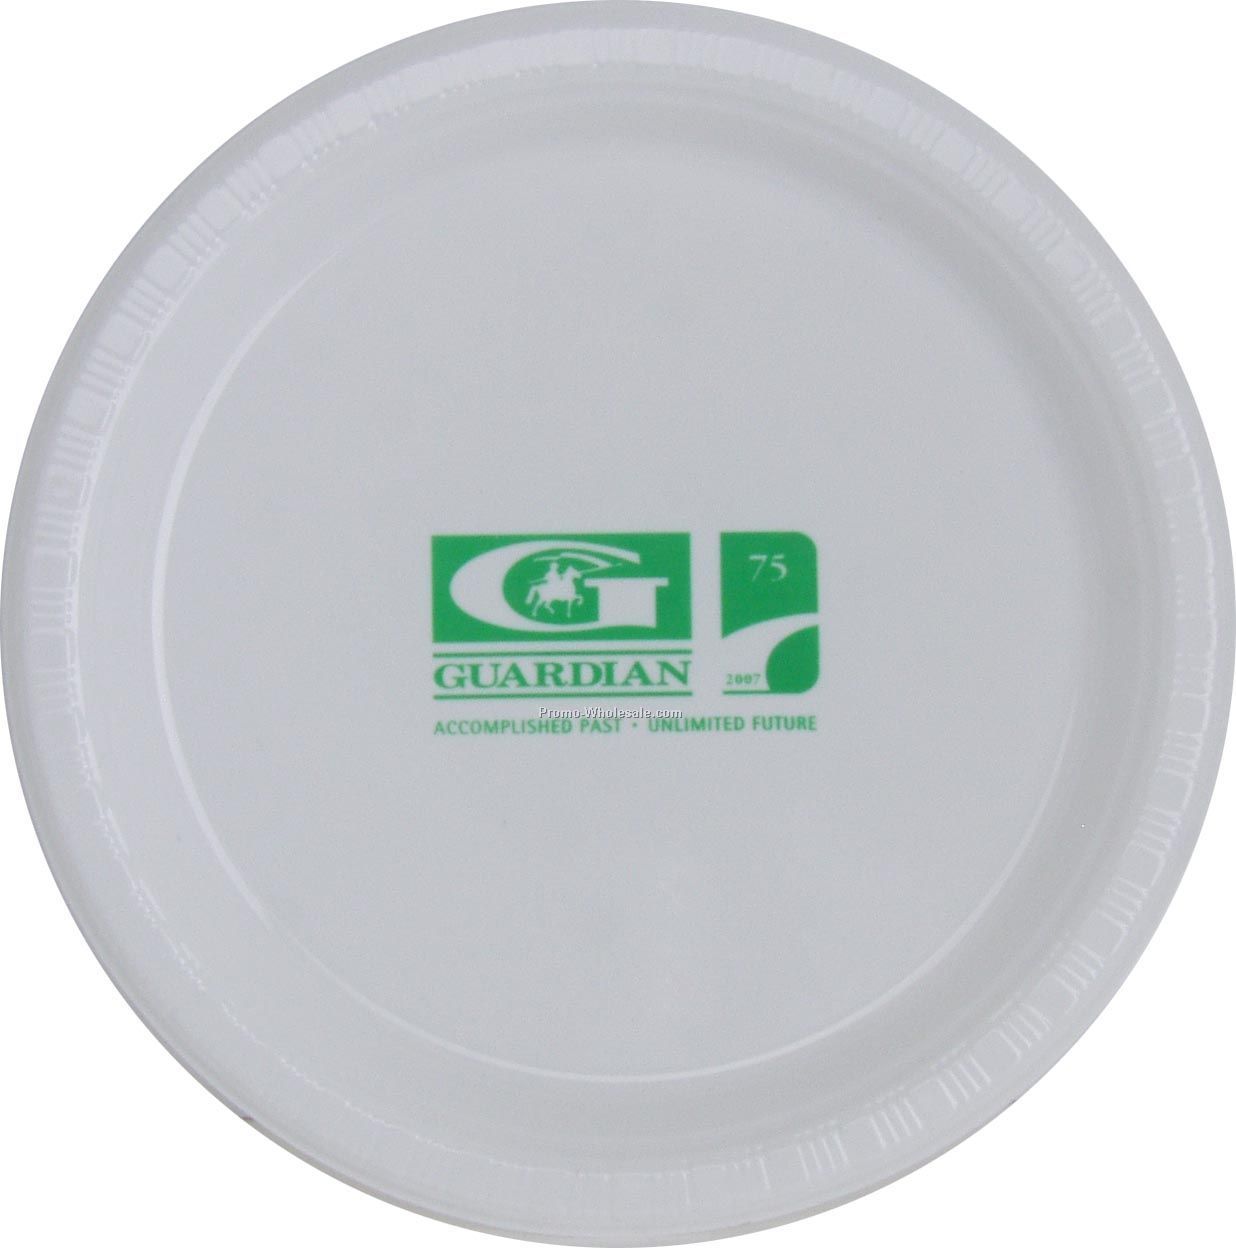 The 500 Line Colorware 7" White Plastic Plate